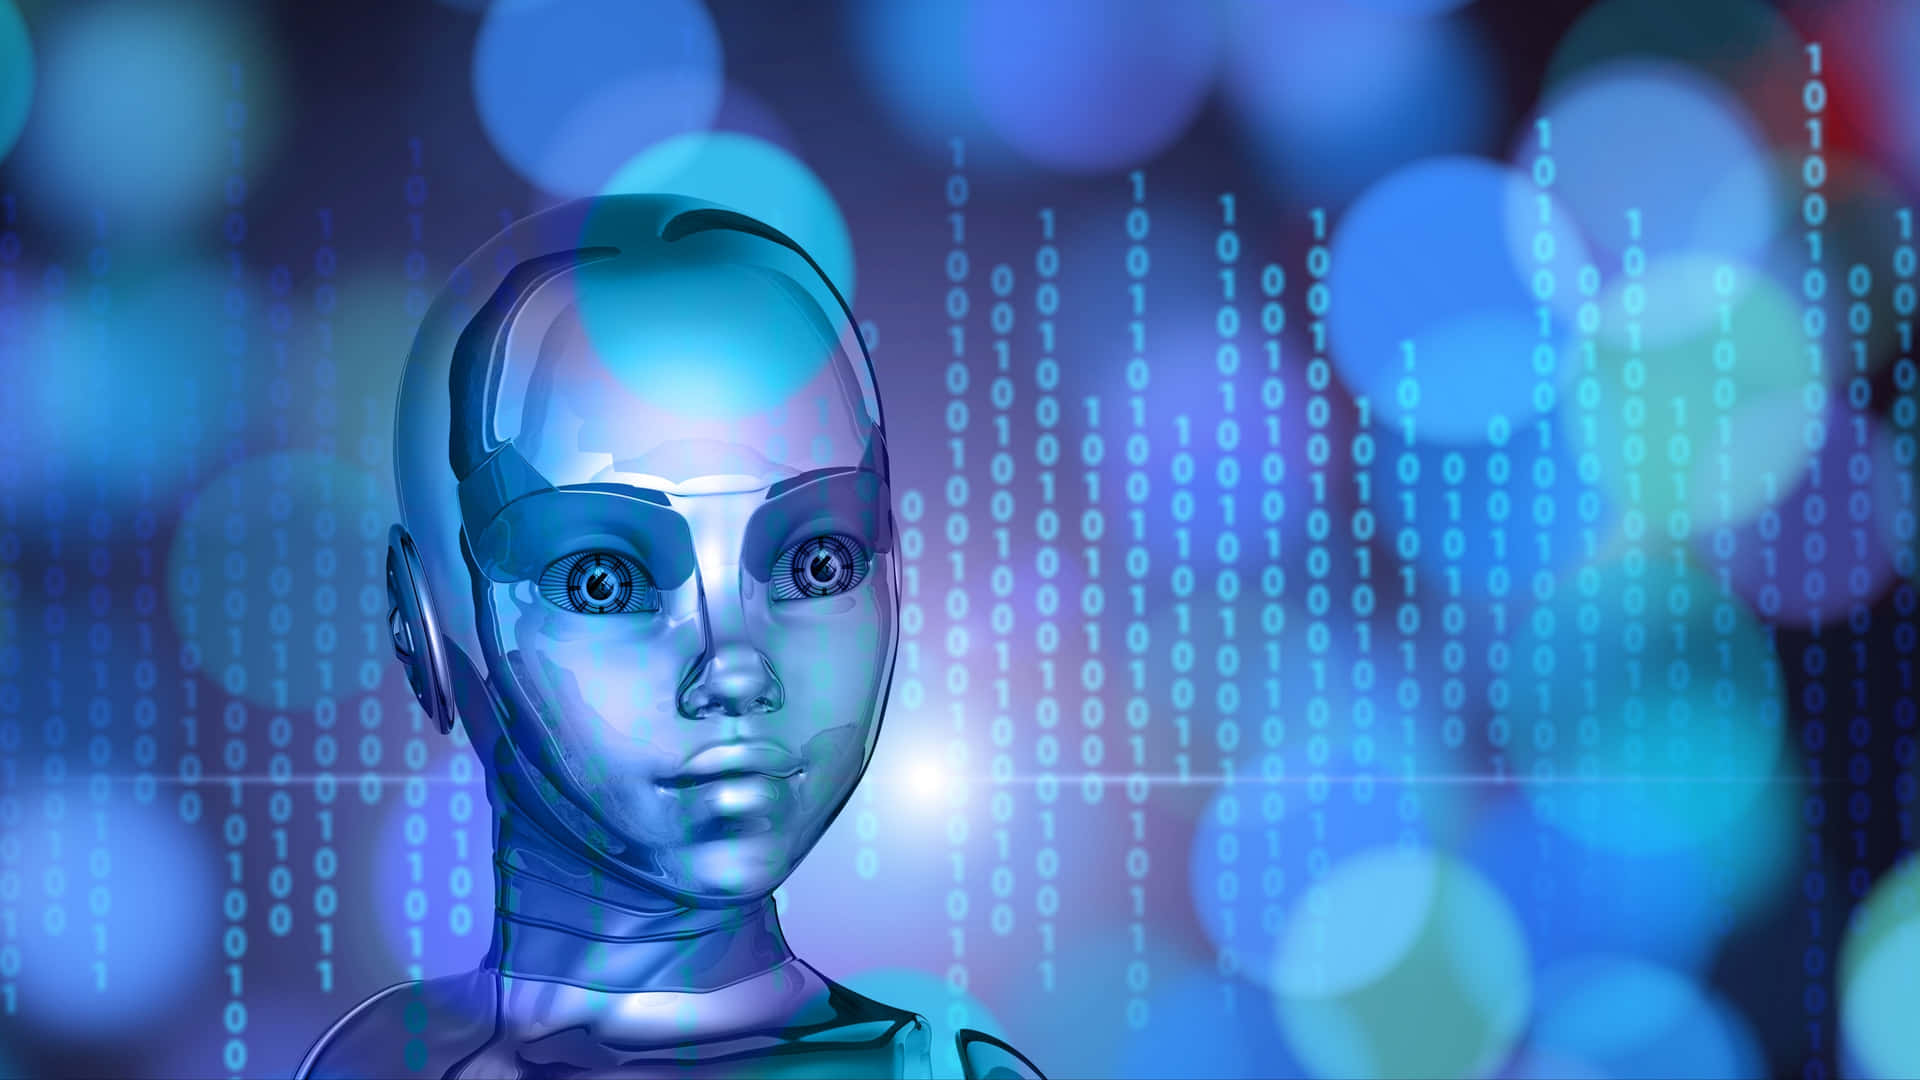 Imagendel Futuro De La Tecnología De Inteligencia Artificial Robótica.